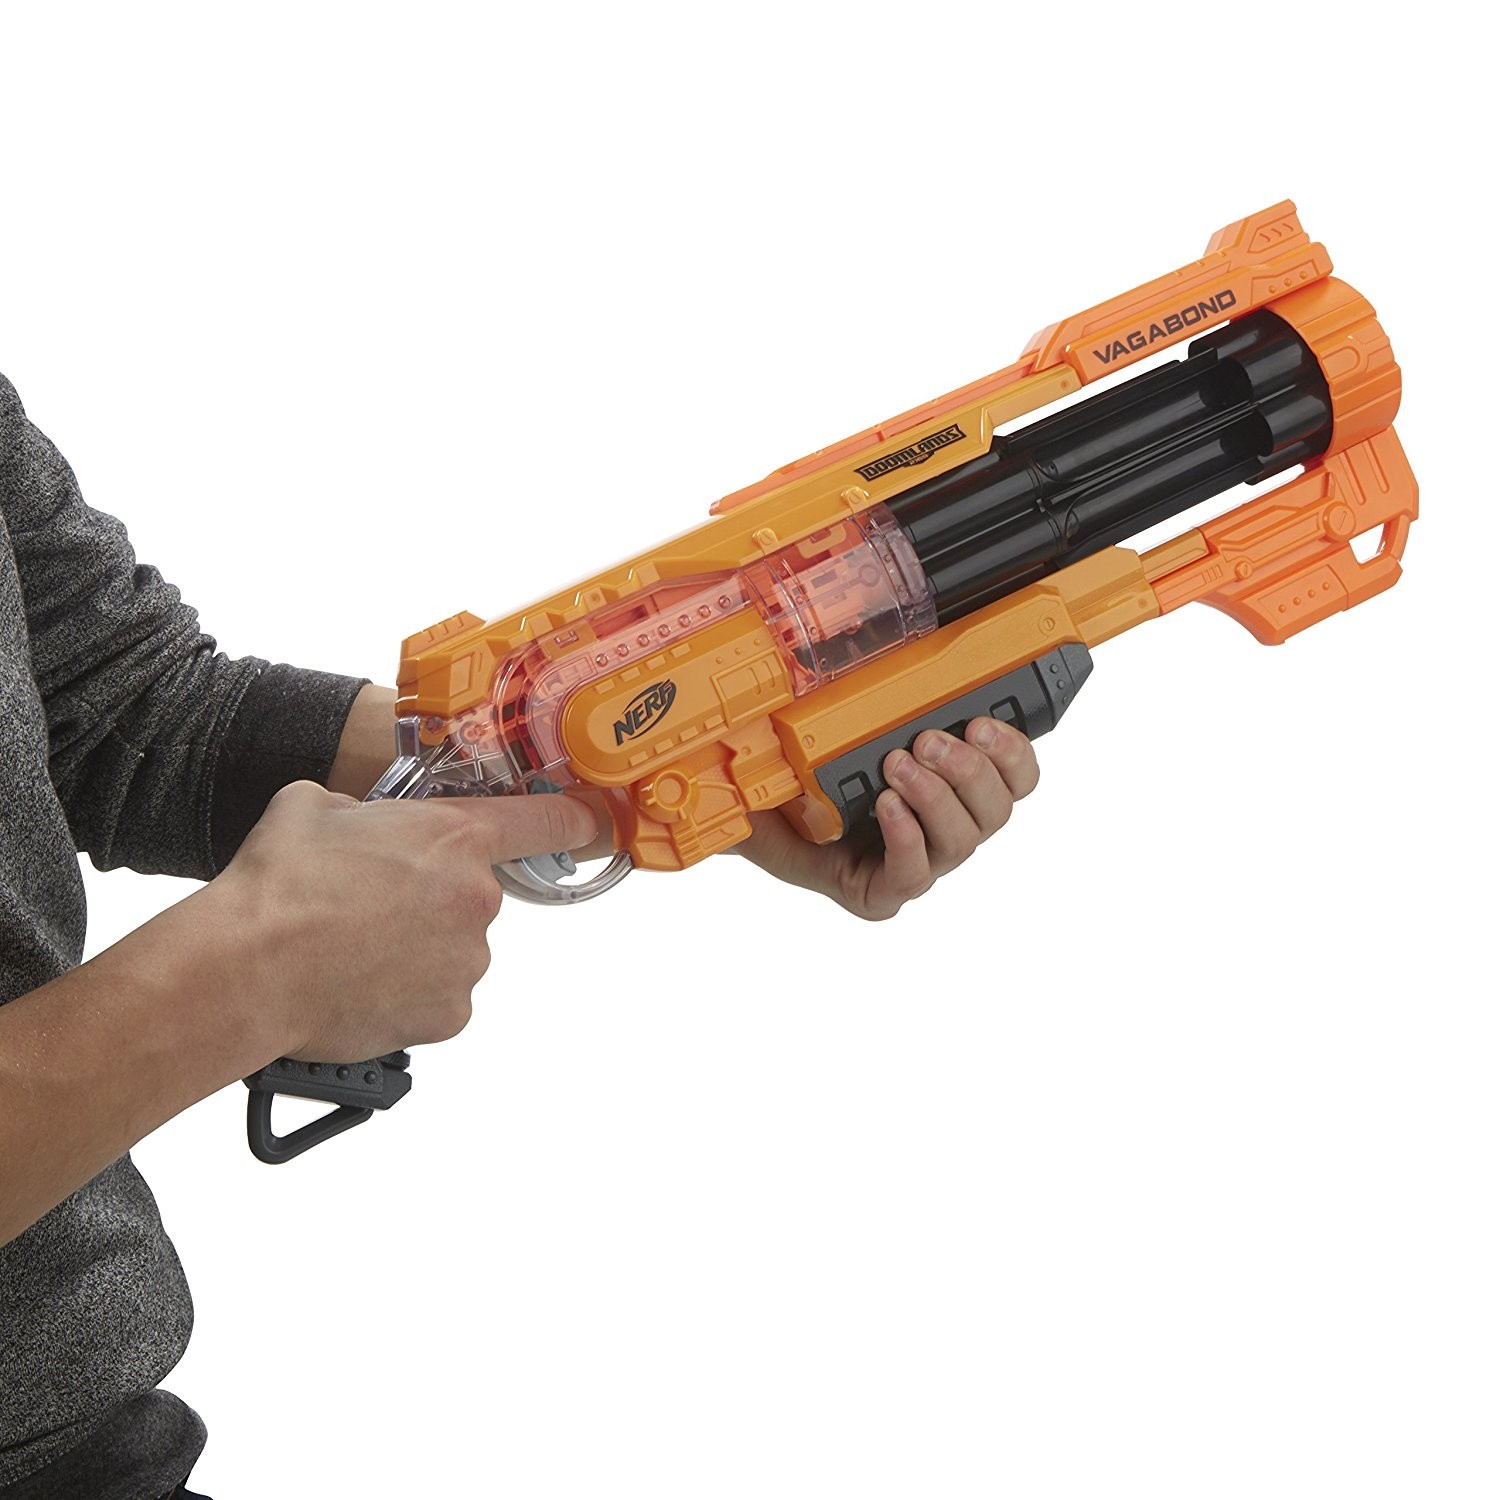 Nerf dévoile un énorme blaster inspiré du jeu vidéo Destiny qui sera vendu  209 euros